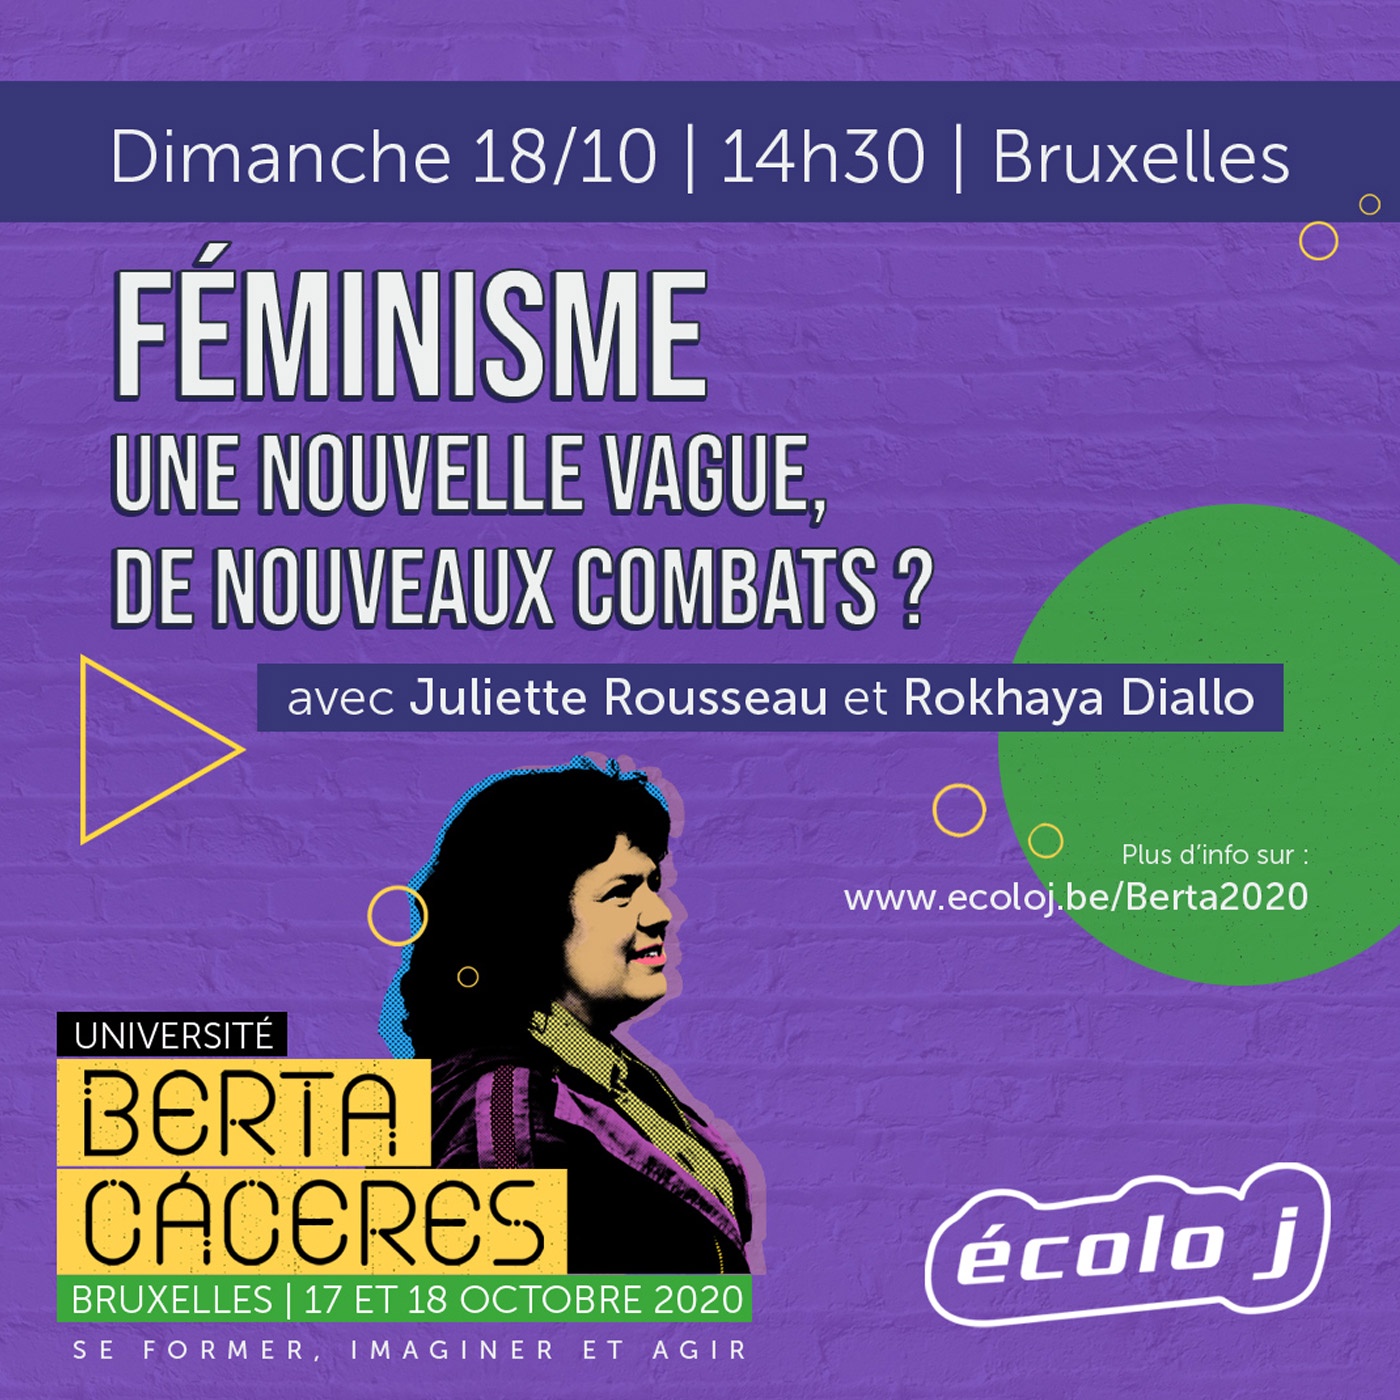 Université Berta Cáceres 2020 | Féminisme, une nouvelle vague, de nouveaux combats ?